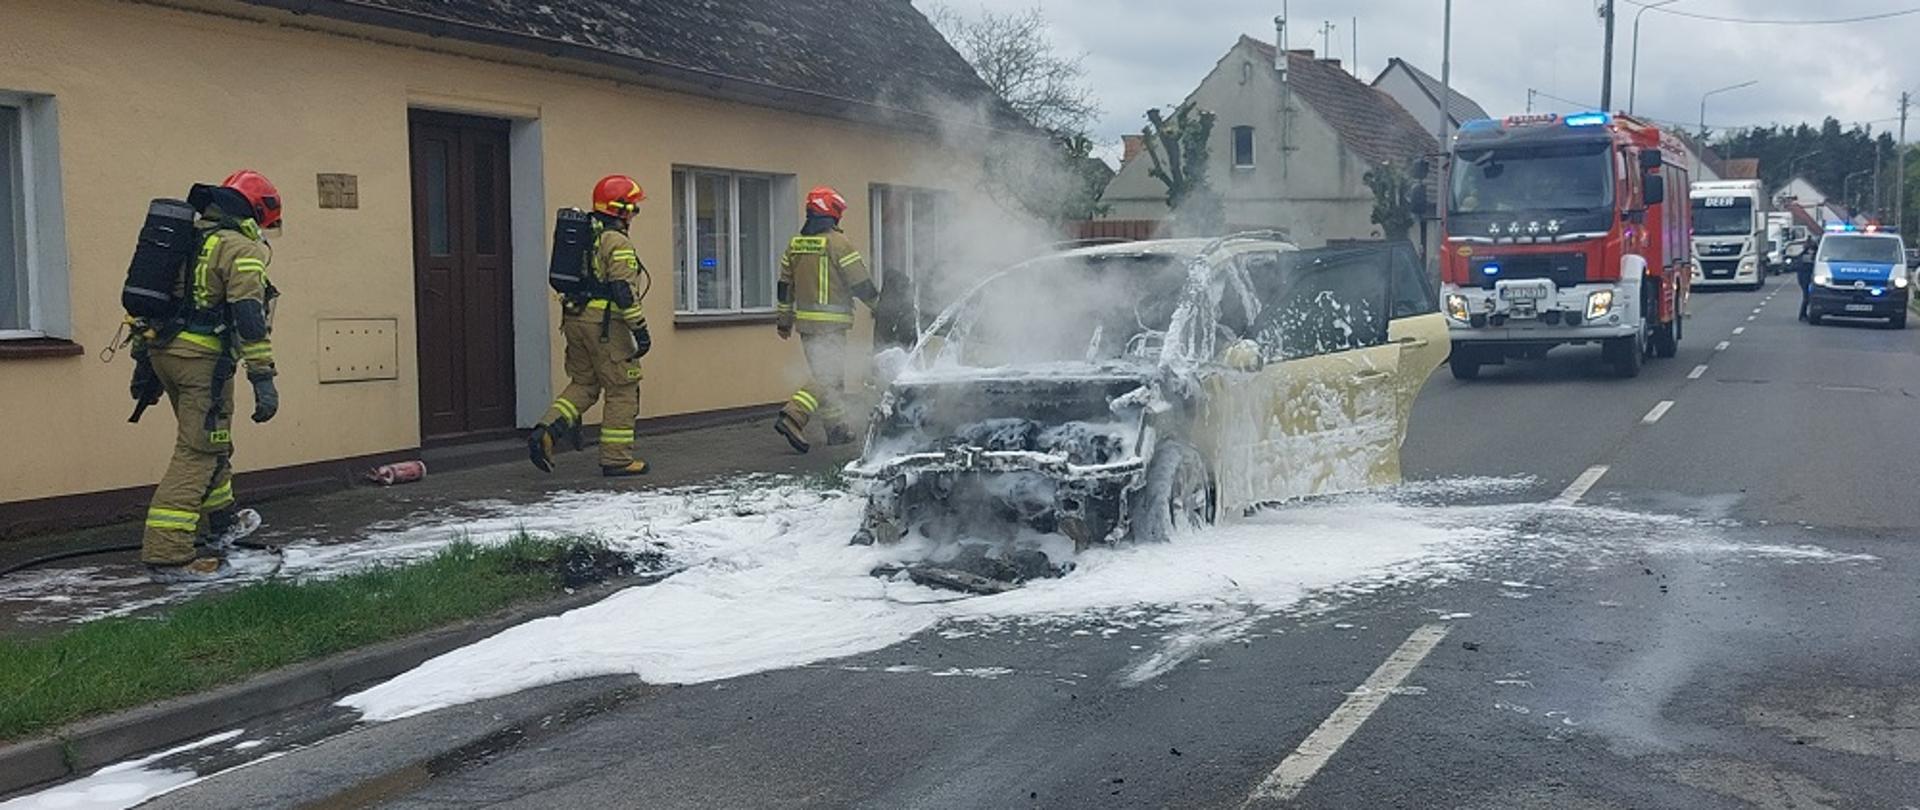 Zdjęcie przedstawia strażaków gaszących pożar samochodu osobowego stającego na środku drogi w miejscowości Margonin.
W tle jezdnia i budynki.
